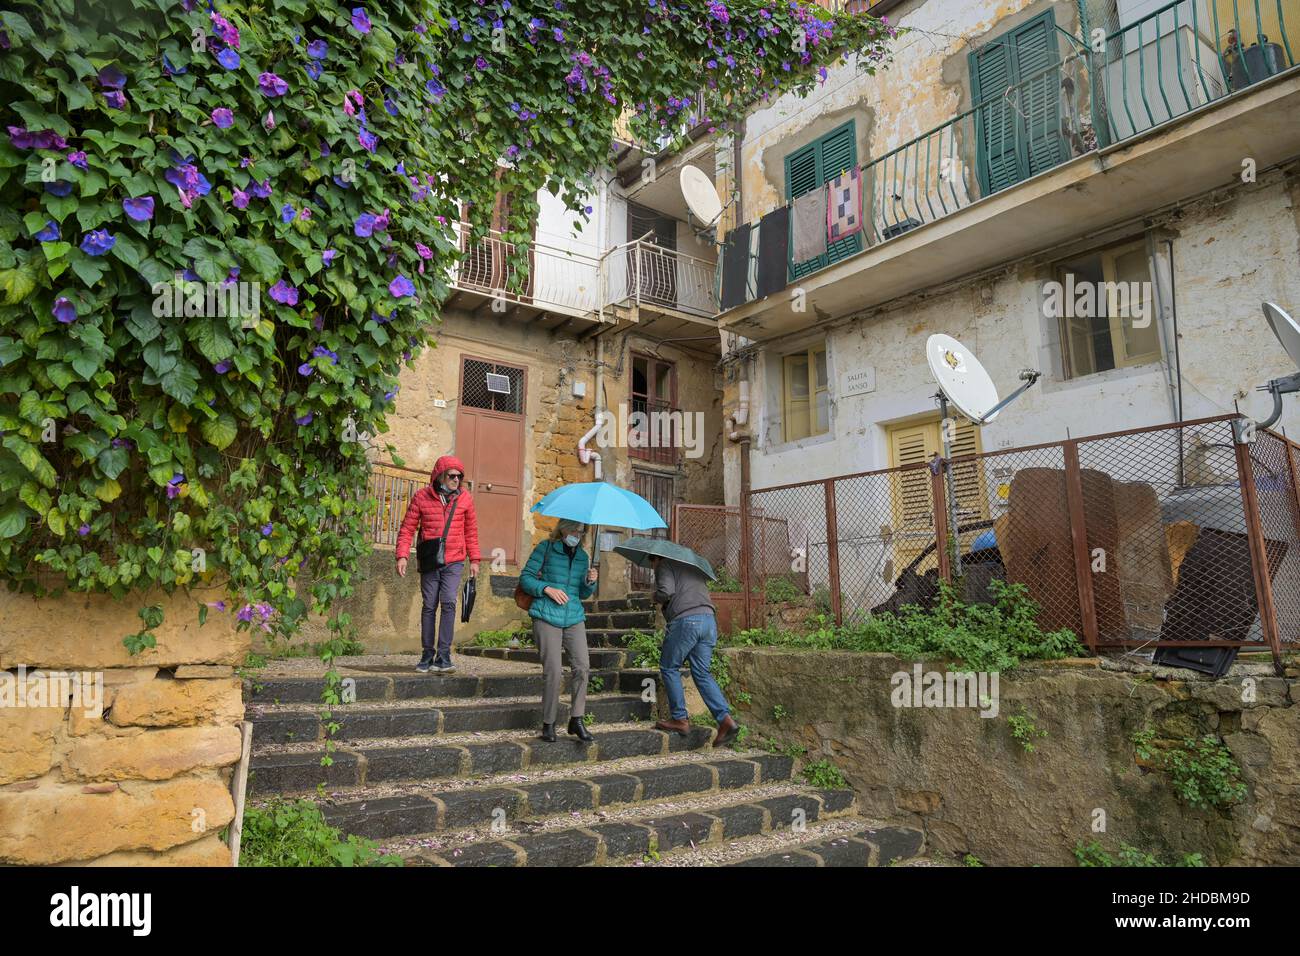 Gasse, Altstadt, Agrigent, Sizilien, Italien Foto de stock